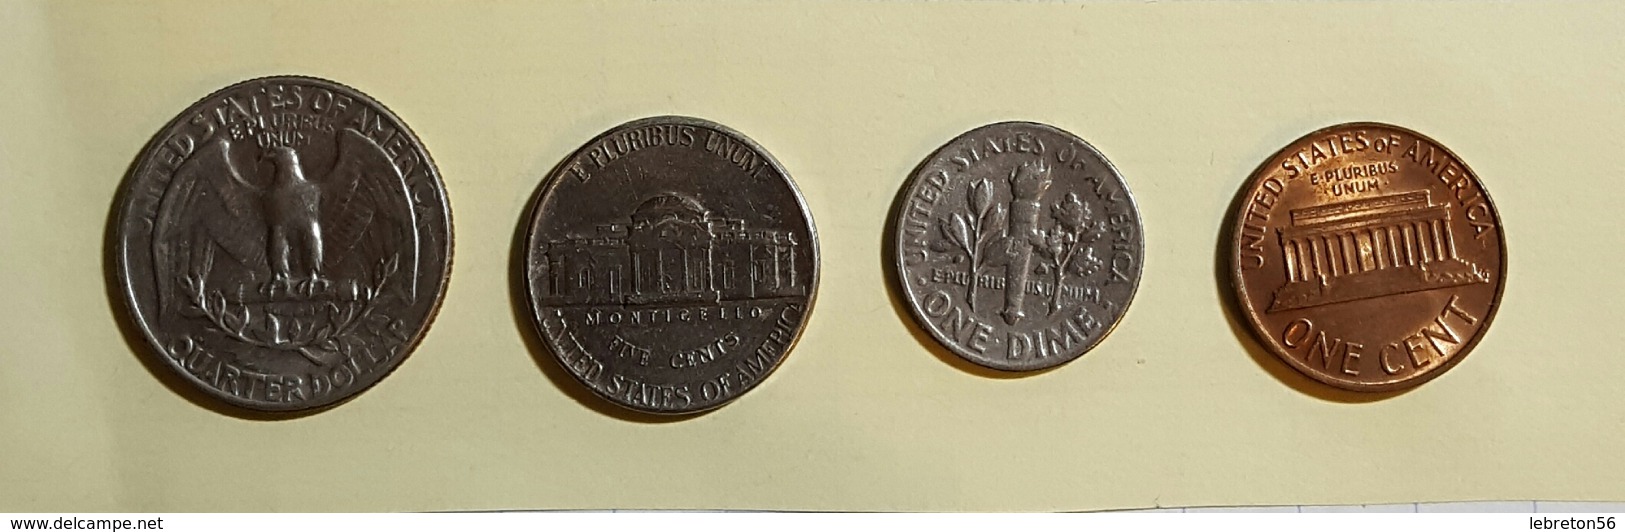 Etats Unis Quater Dollards 1967 Five Cent 1972 One Dime 1966 On Cent1976 Voir Les Deux Photos - Vrac - Monnaies